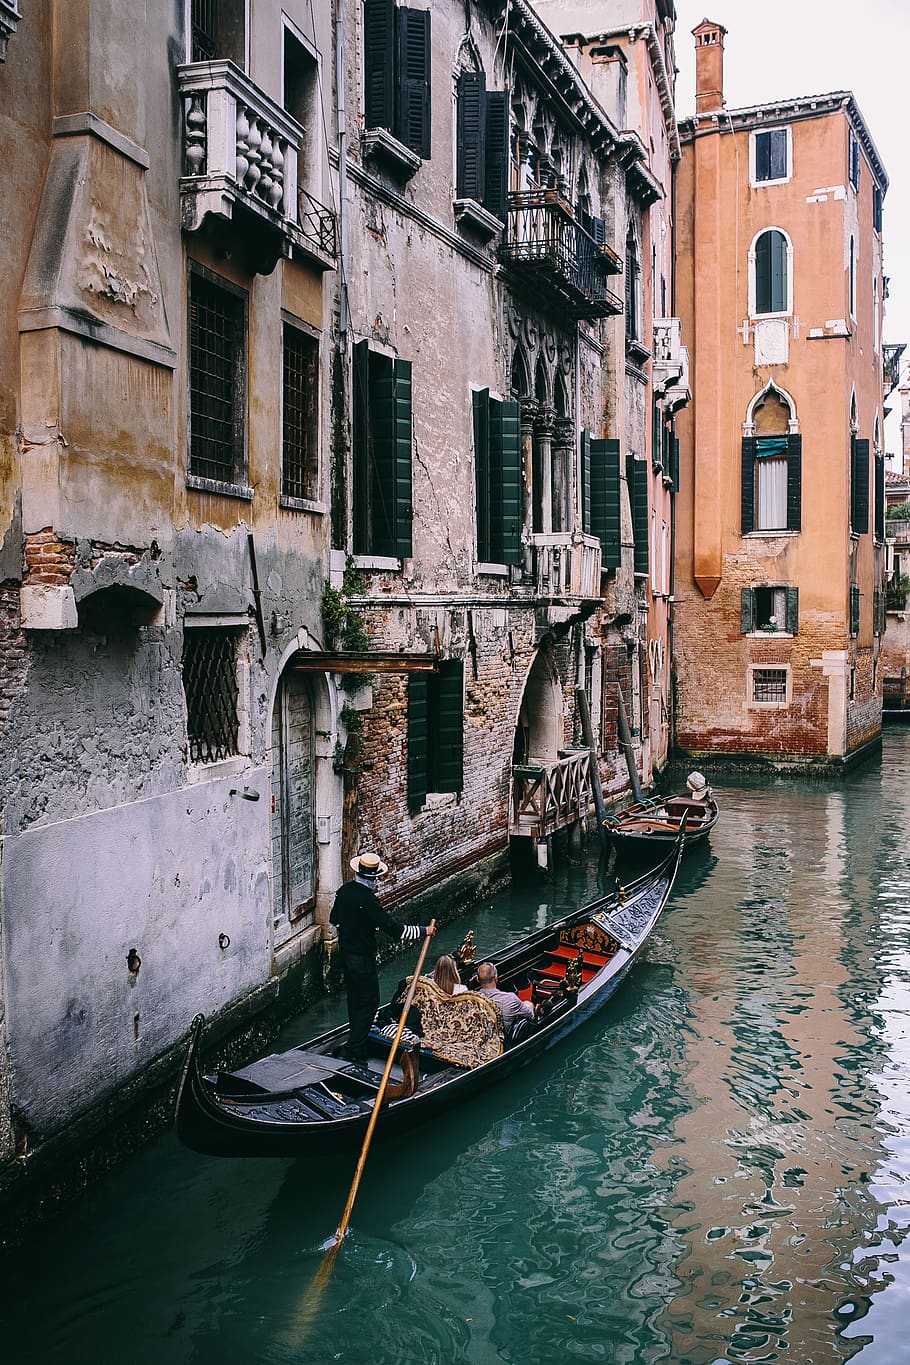 férias, arquitetura, edifícios, cidade velha, Europa, italiano, Itália, veneto, venezia, mediterrâneo